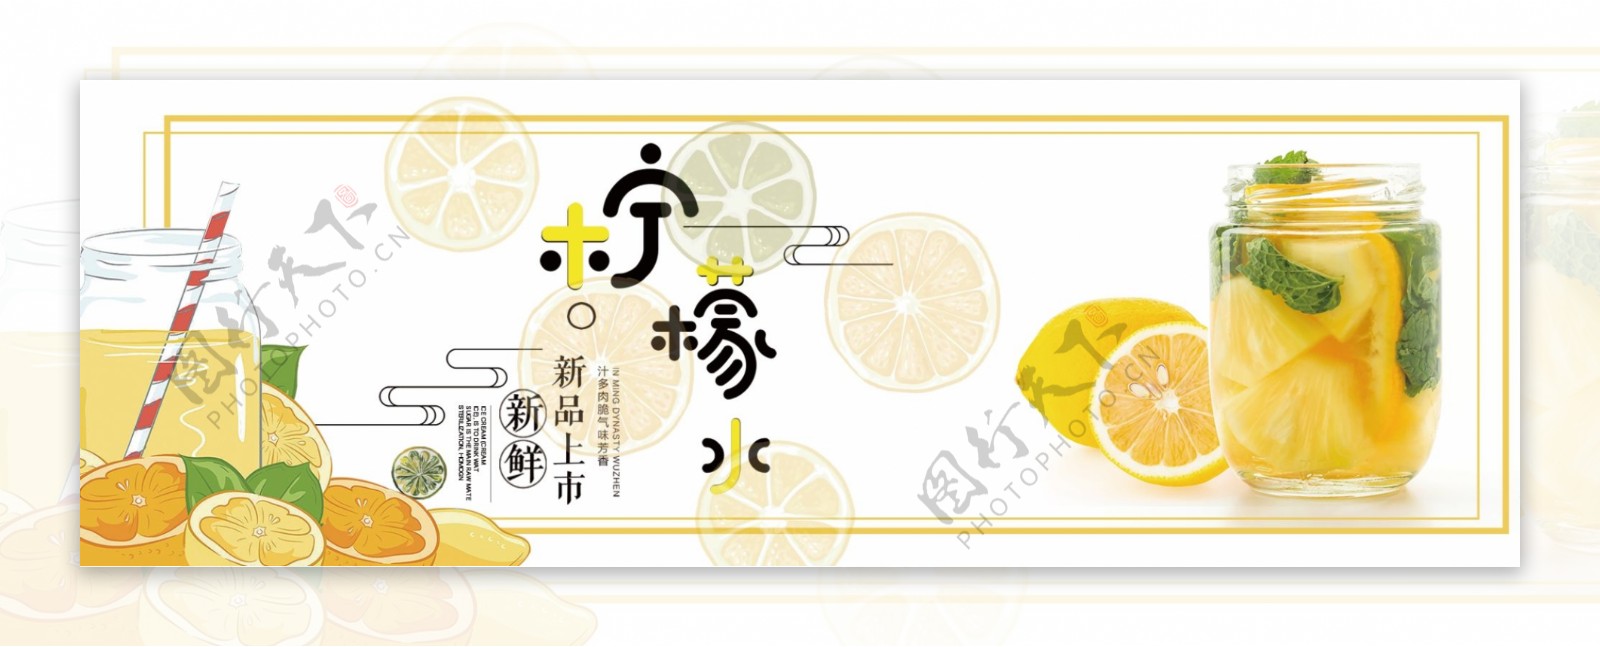 夏季柠檬新品上市饮料海报